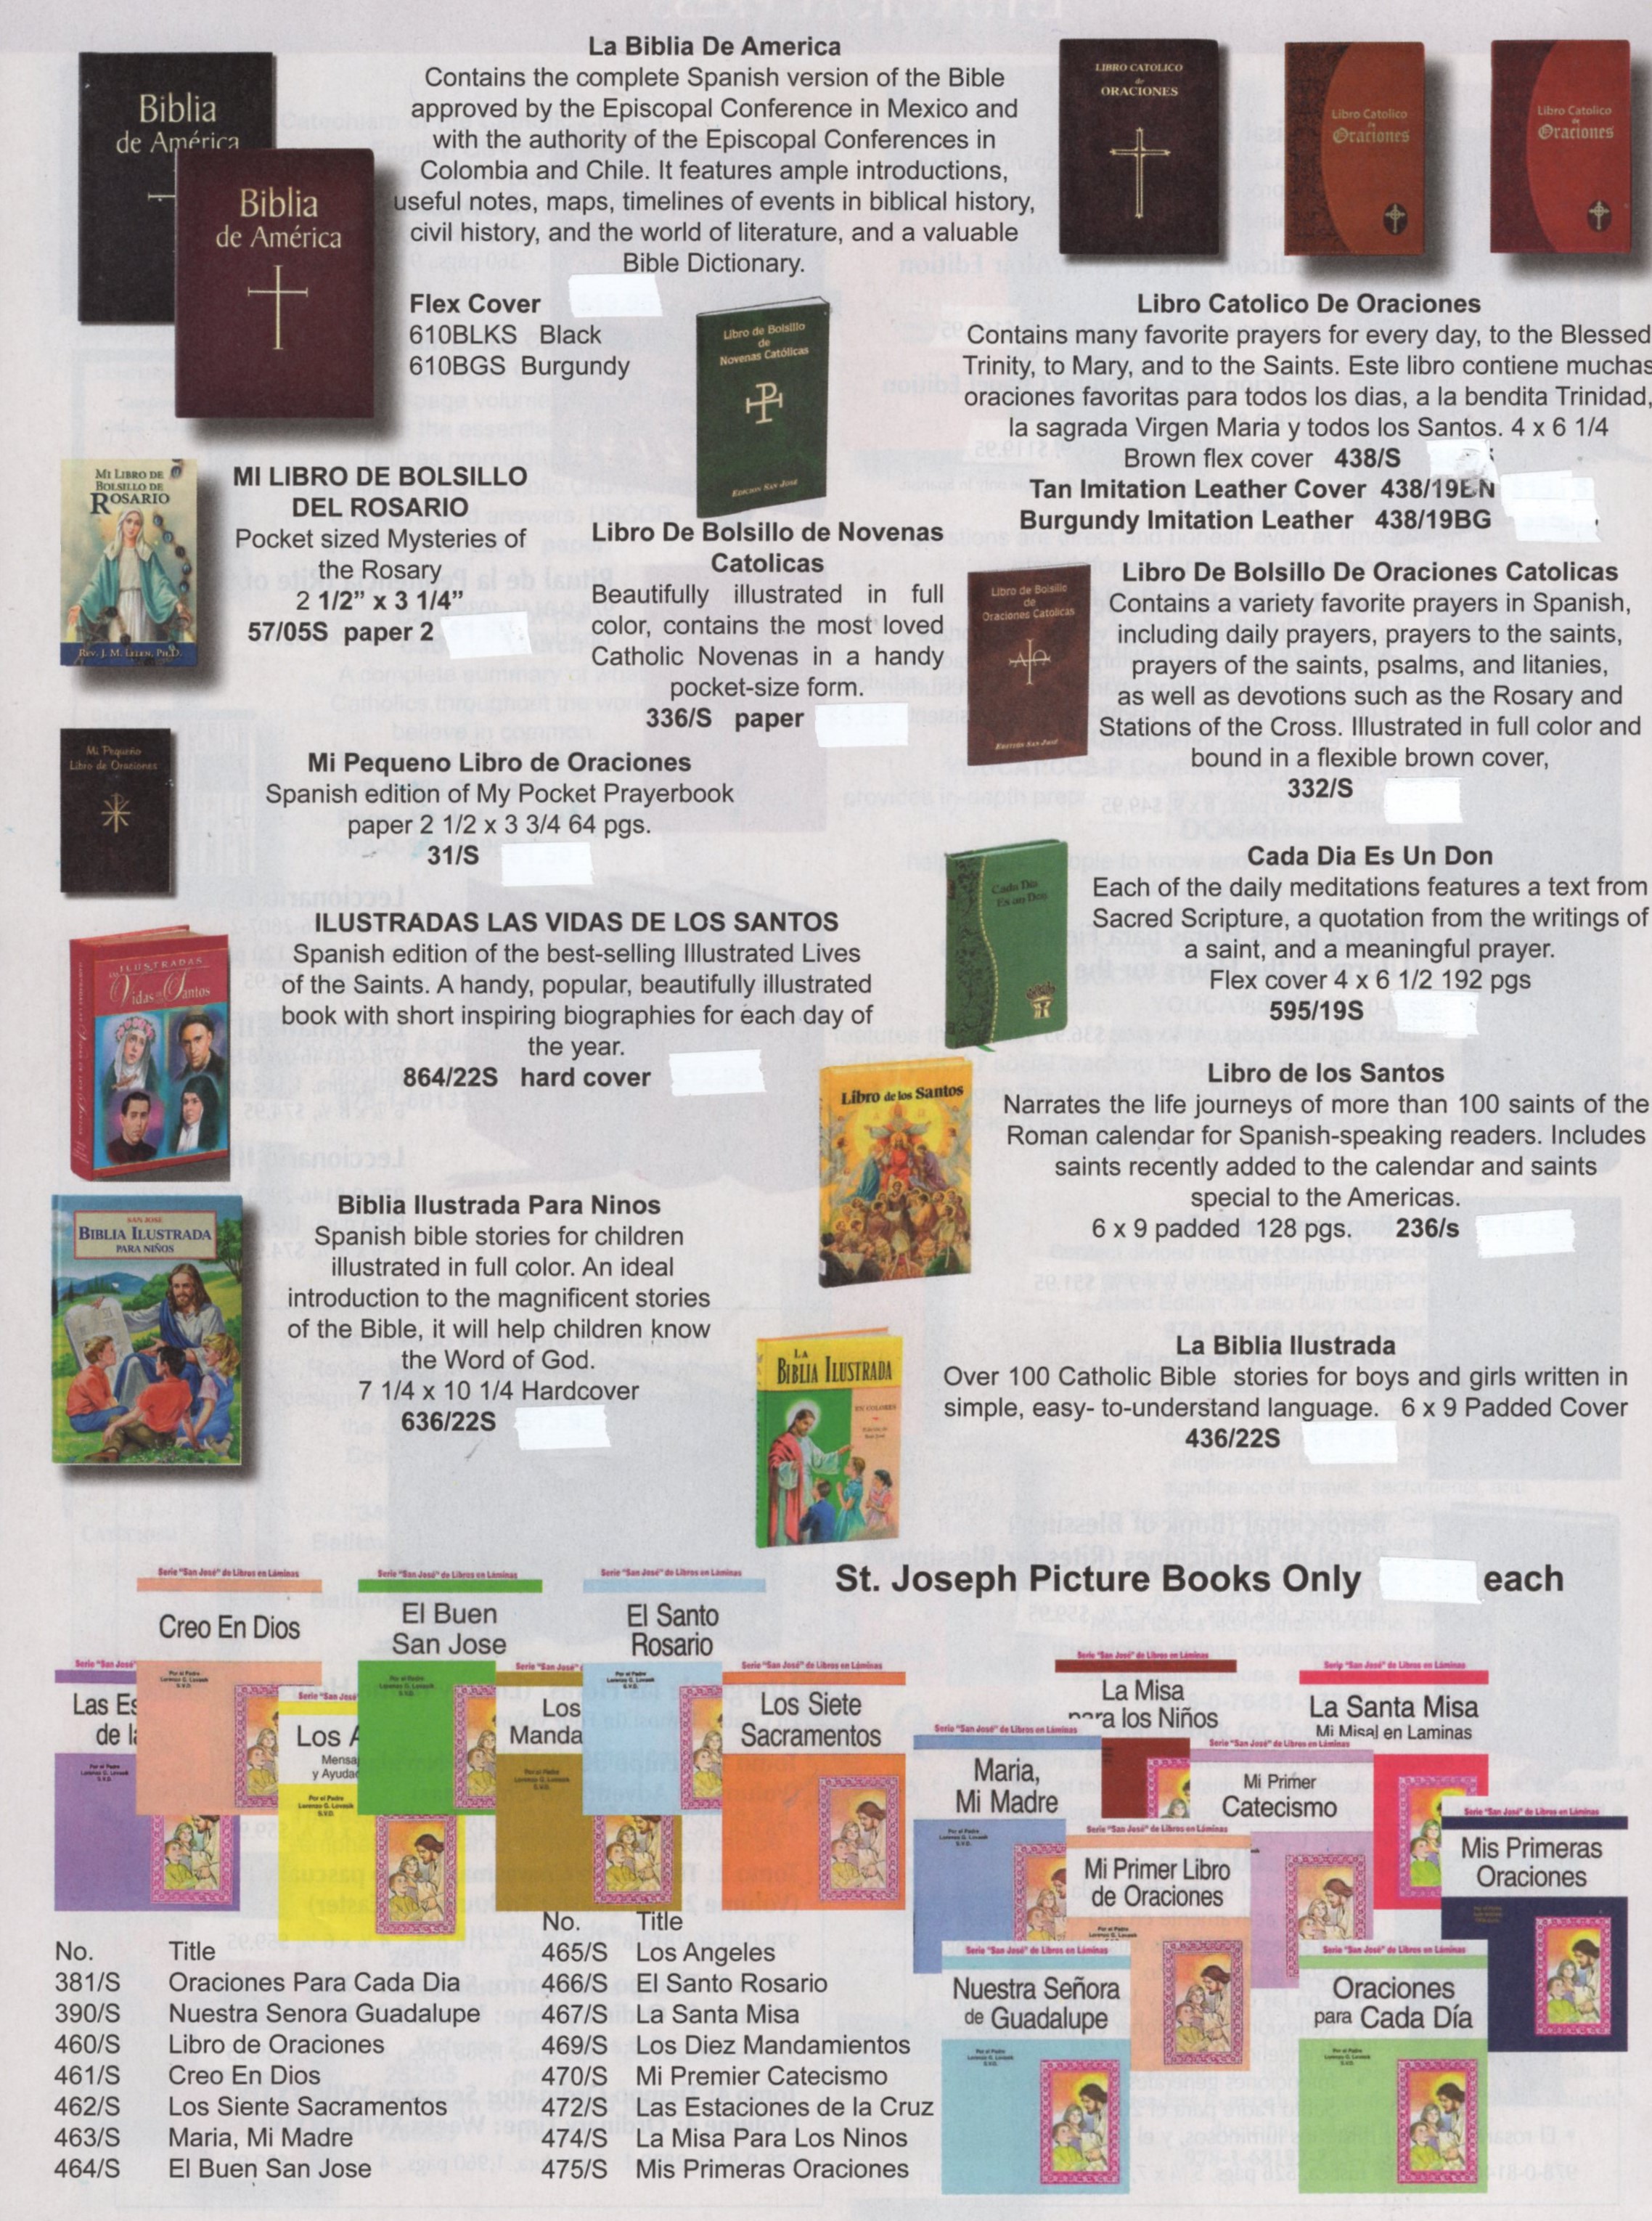 Libro de Bolsillo de Novenas Católicas